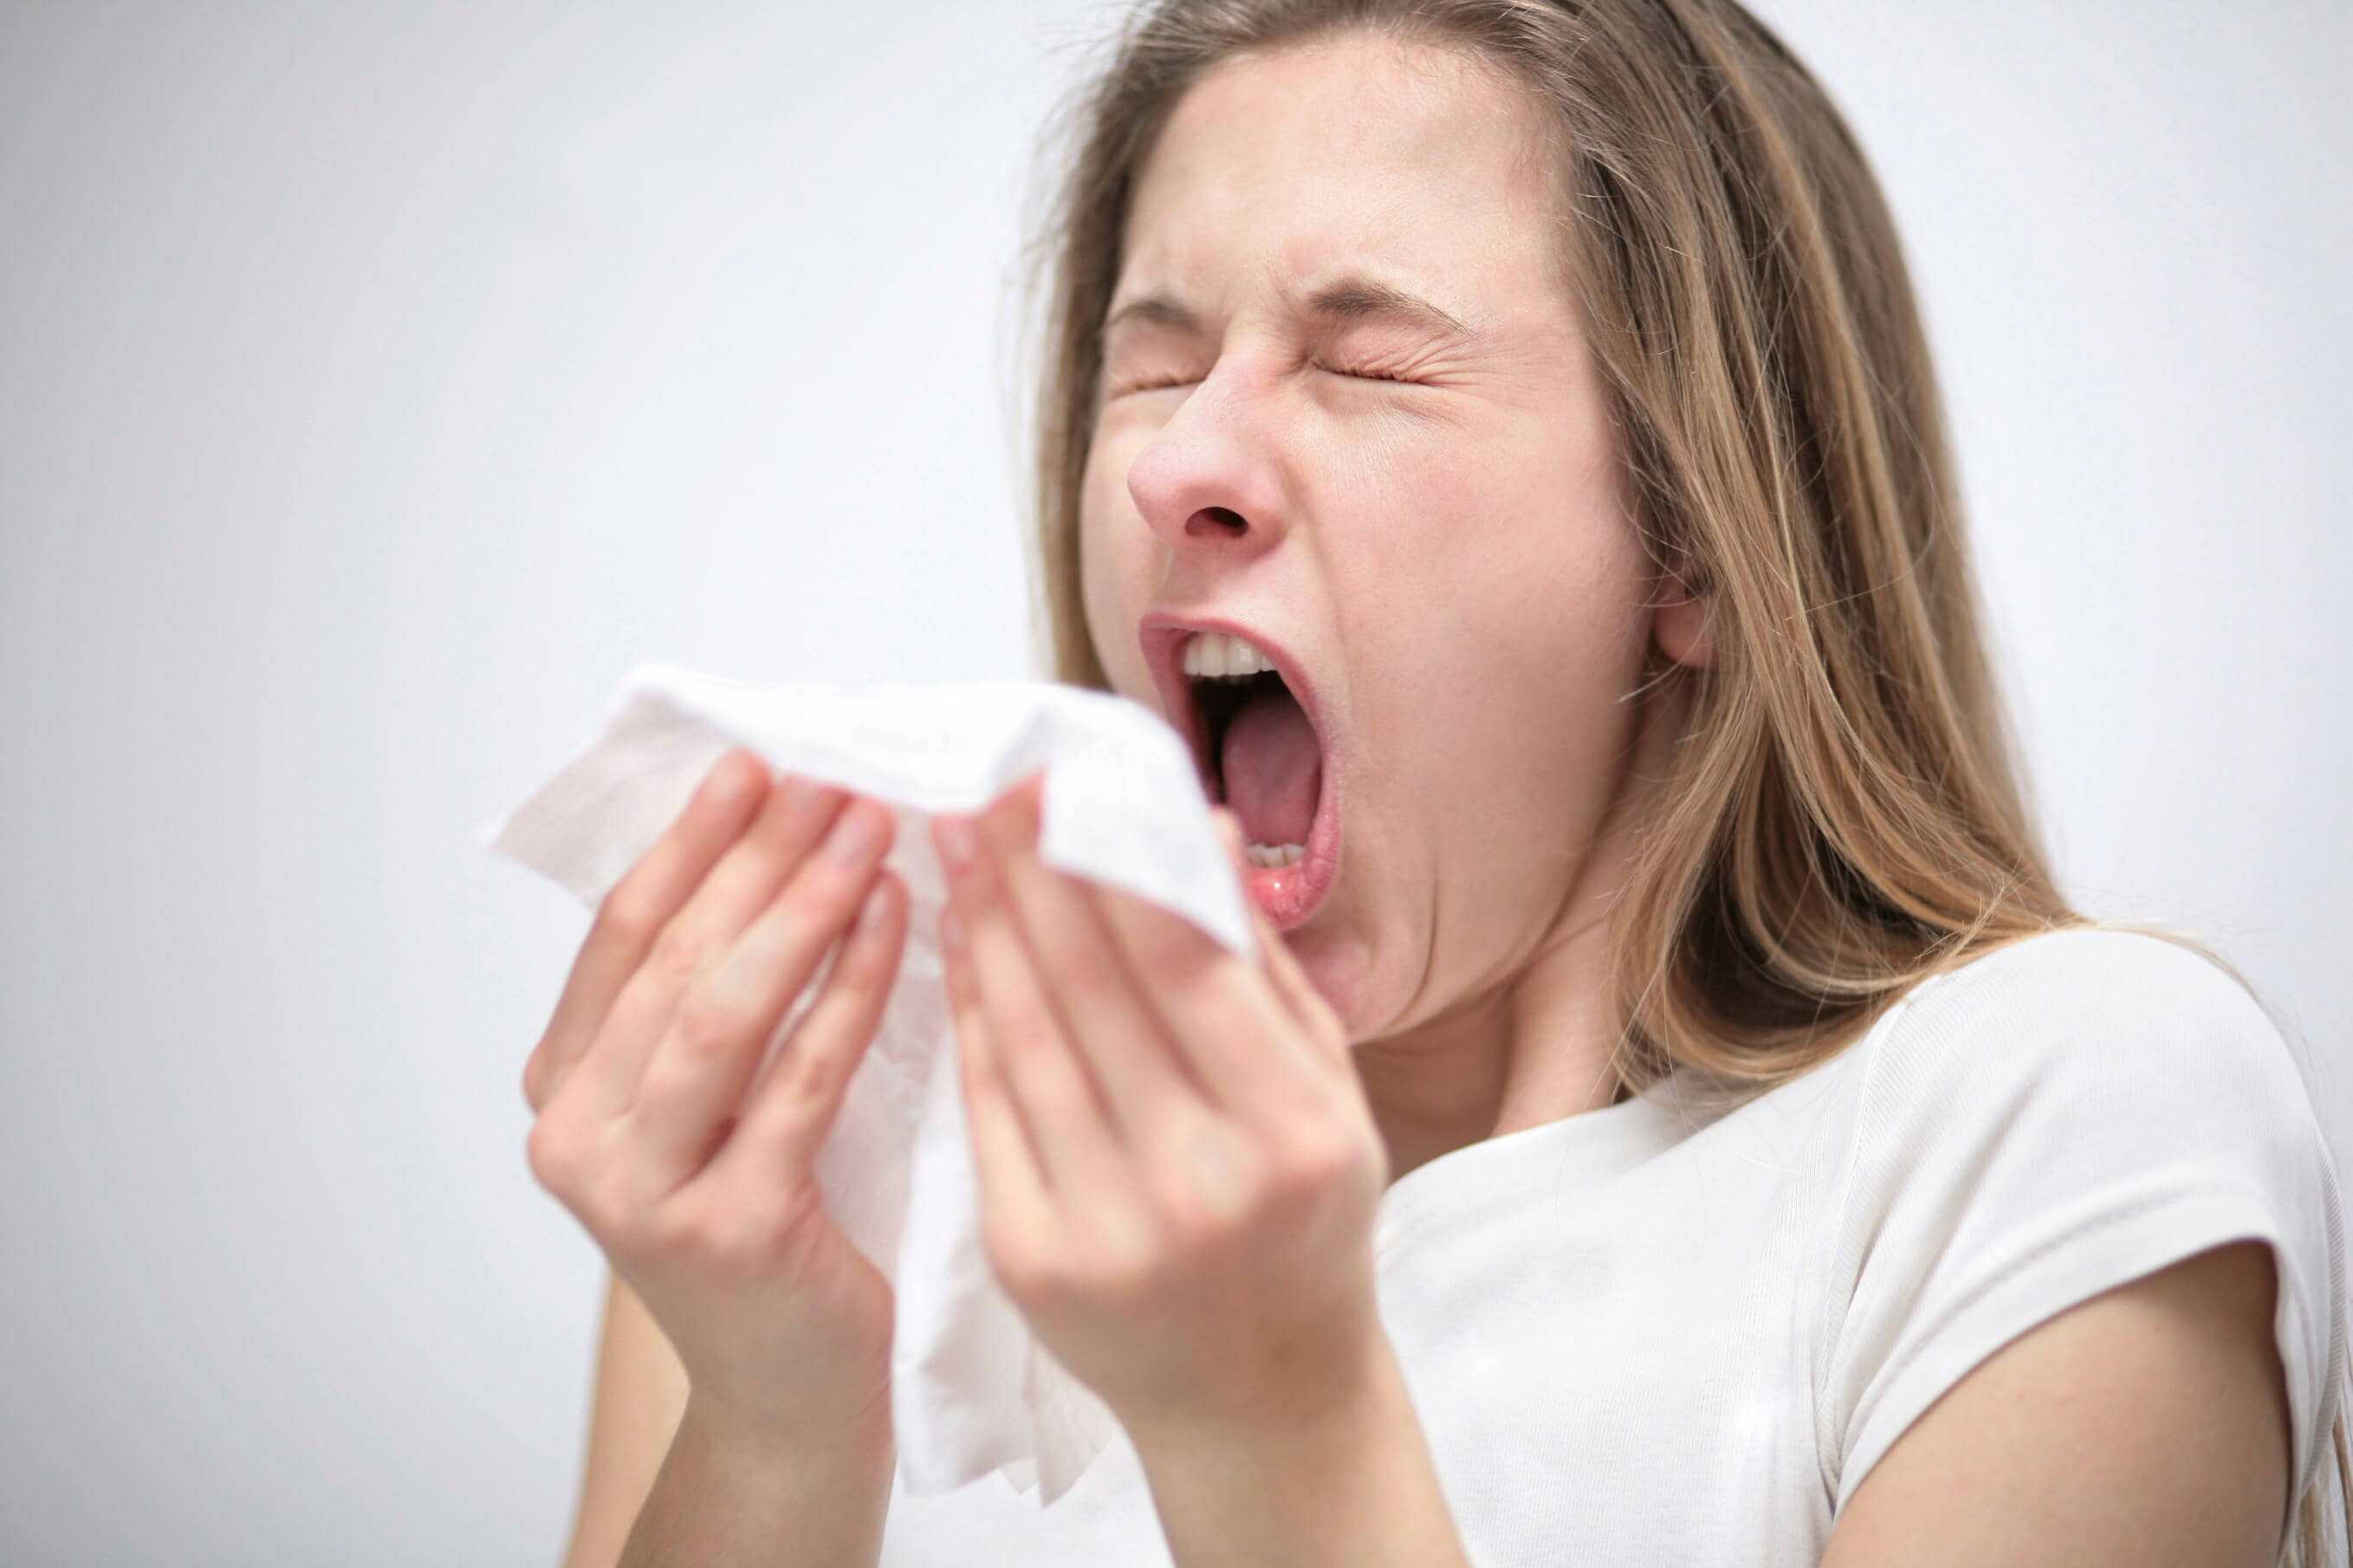 По каким причинам хорек может кашлять и чихать: бронхит, простудное заболевание, насморк, кардиомиопатия, пищевая аллергическая реакция, пыль, паразиты. Профилактика заболеваний.